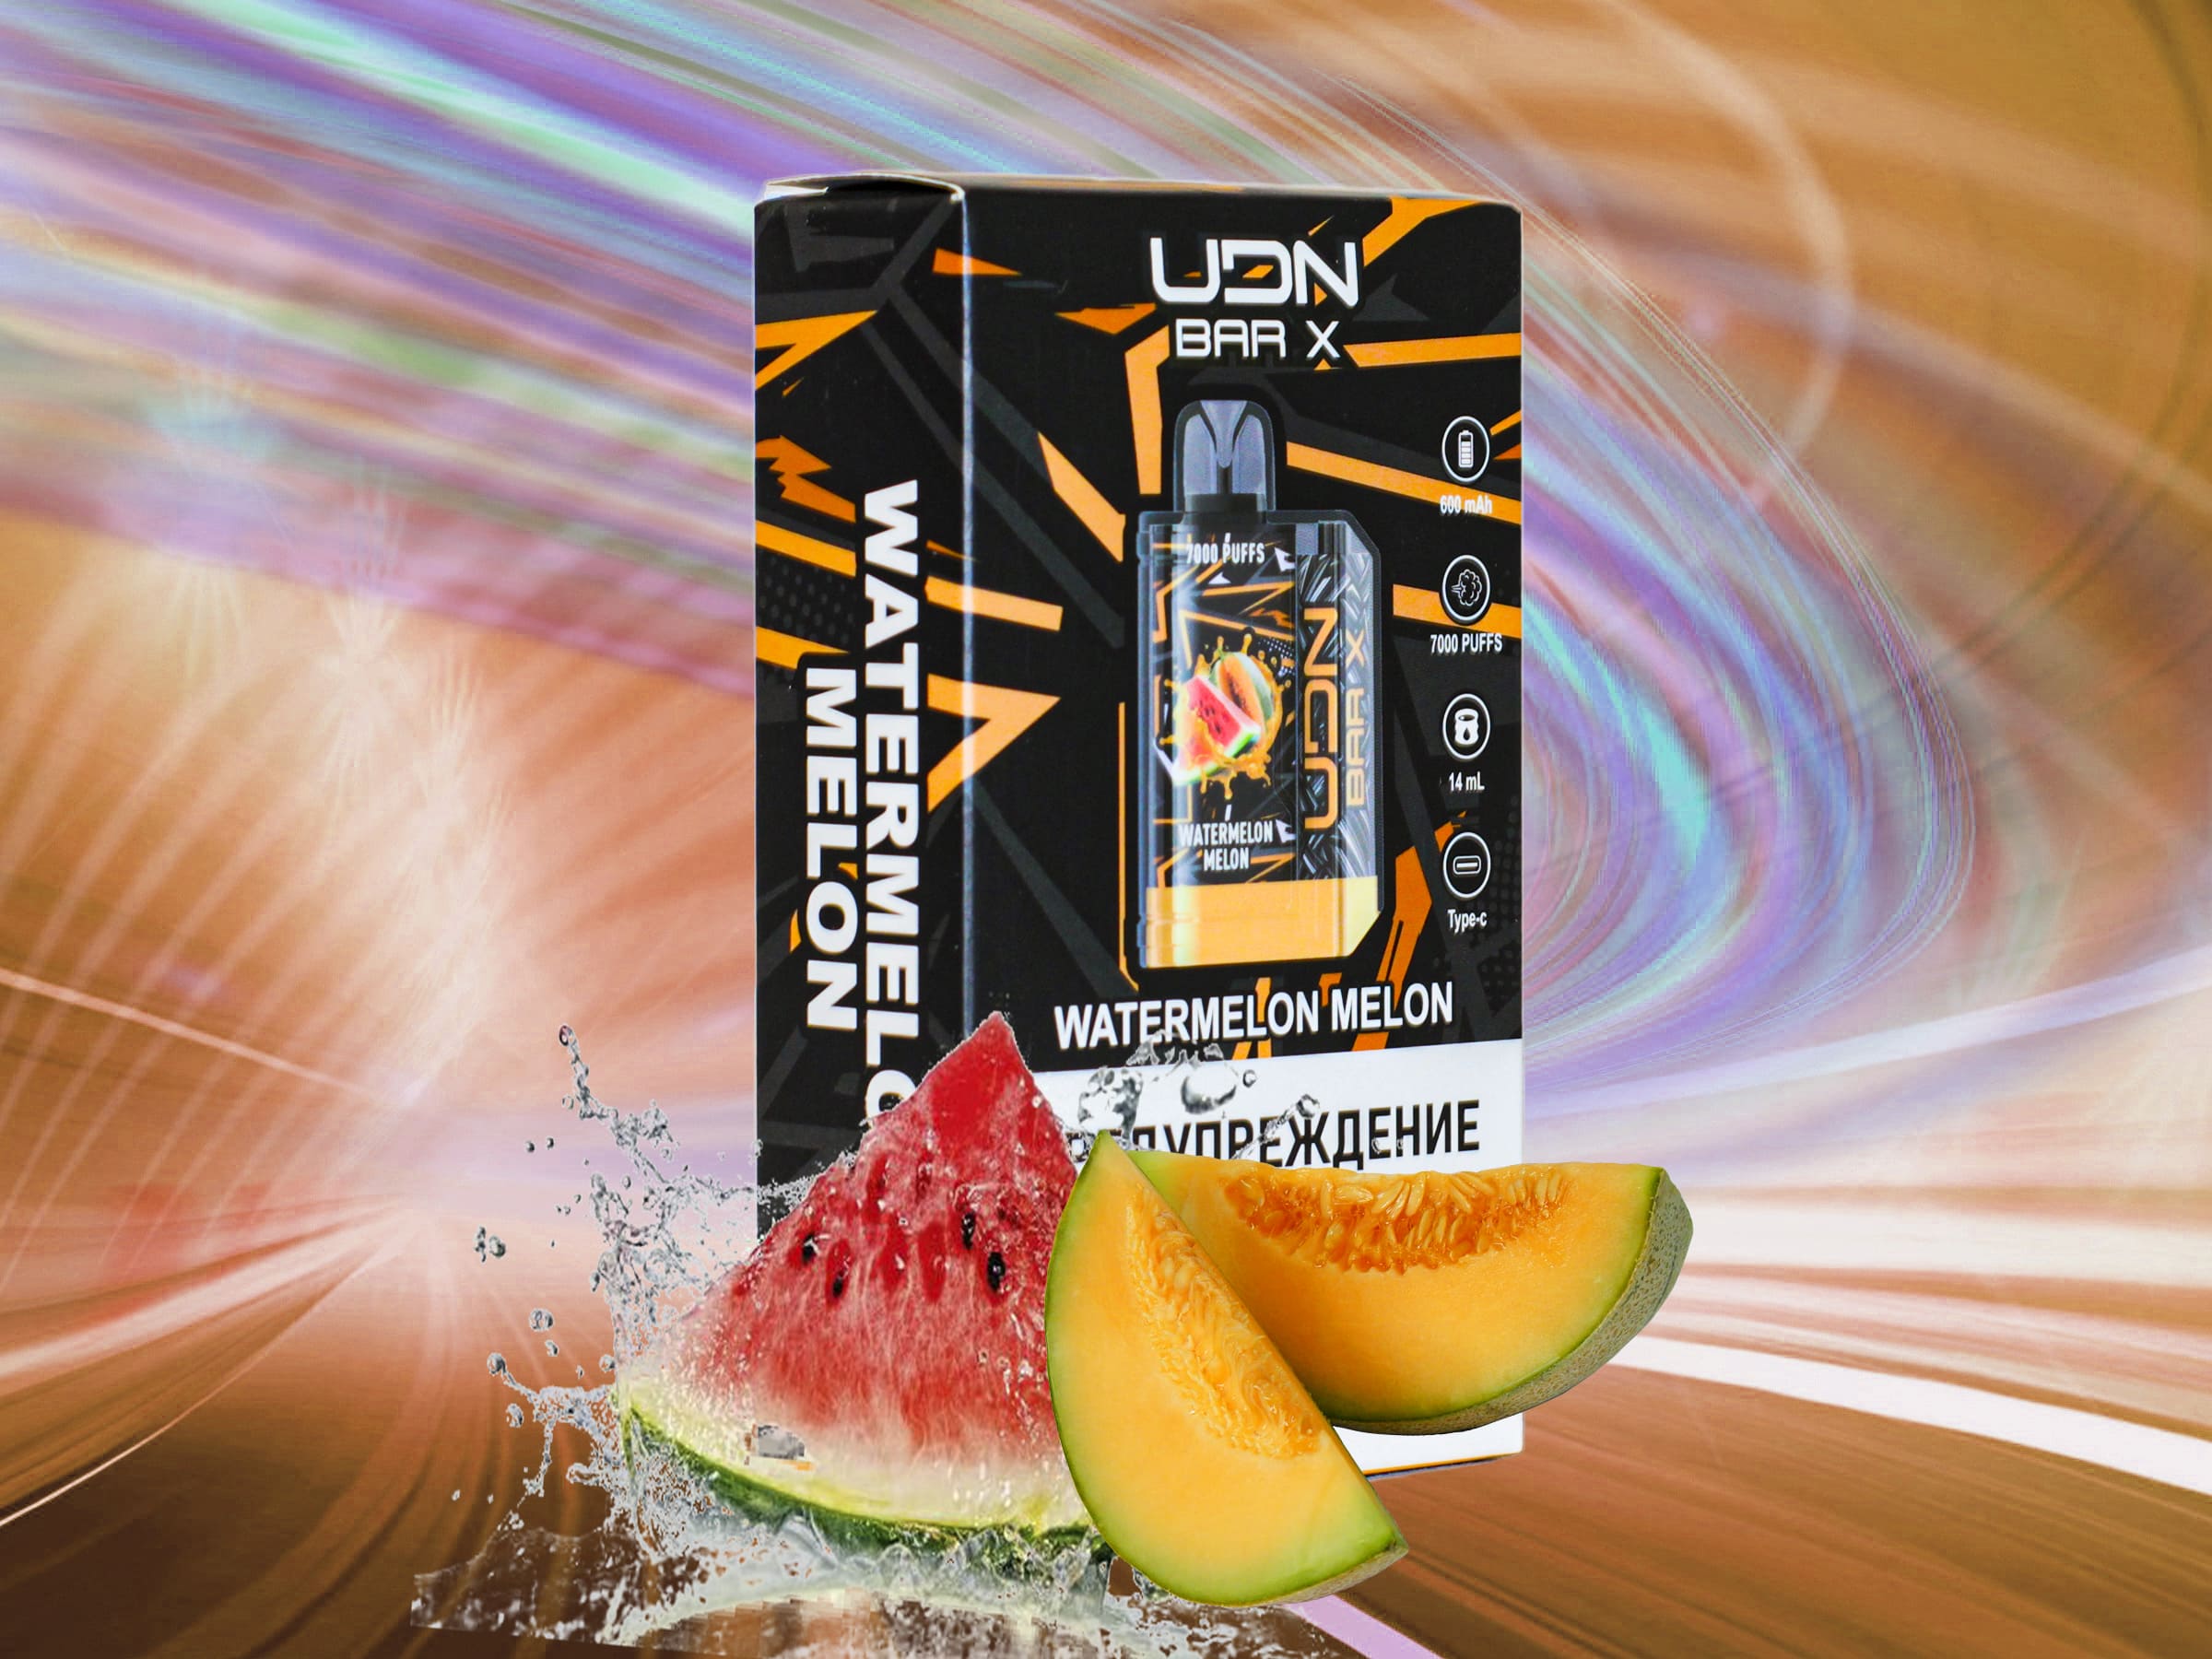 UDN X V3 7000 / Watermelon Melon